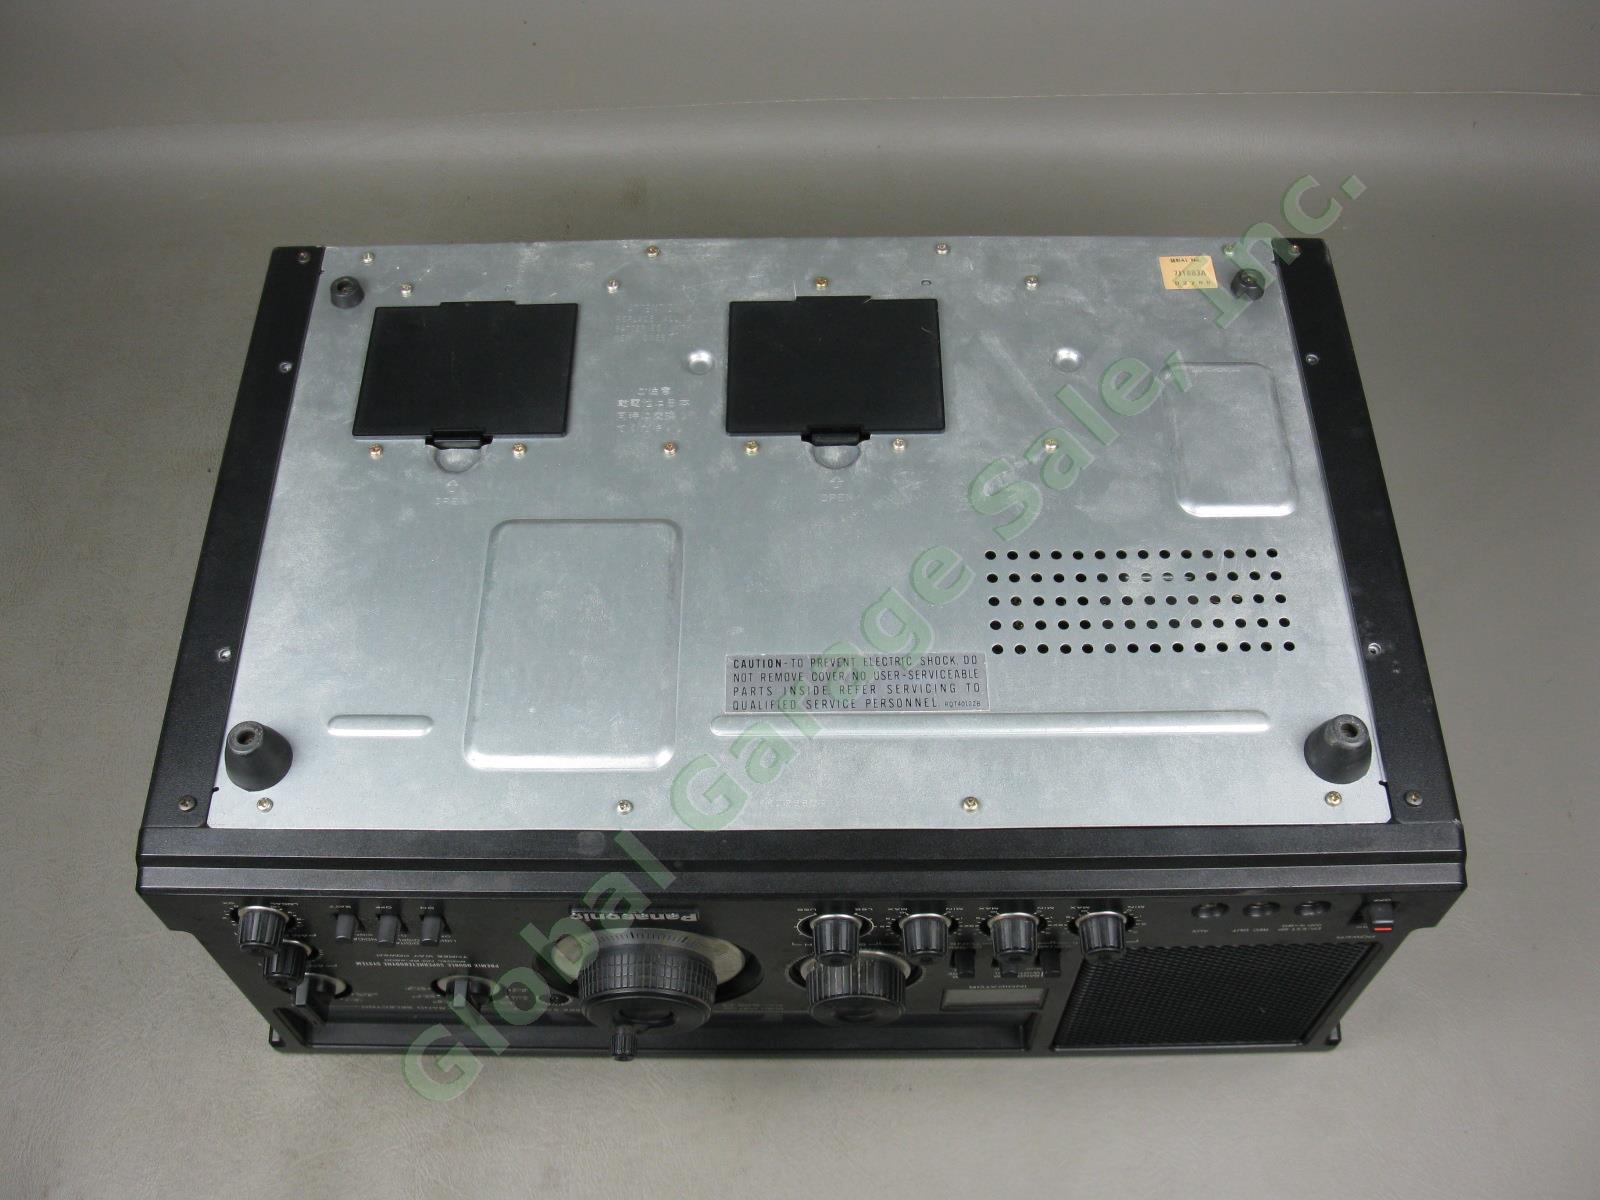 Panasonic RF-4800 FM-AM-SSB-CW 10-Band Shortwave Radio Communication Receiver NR 9